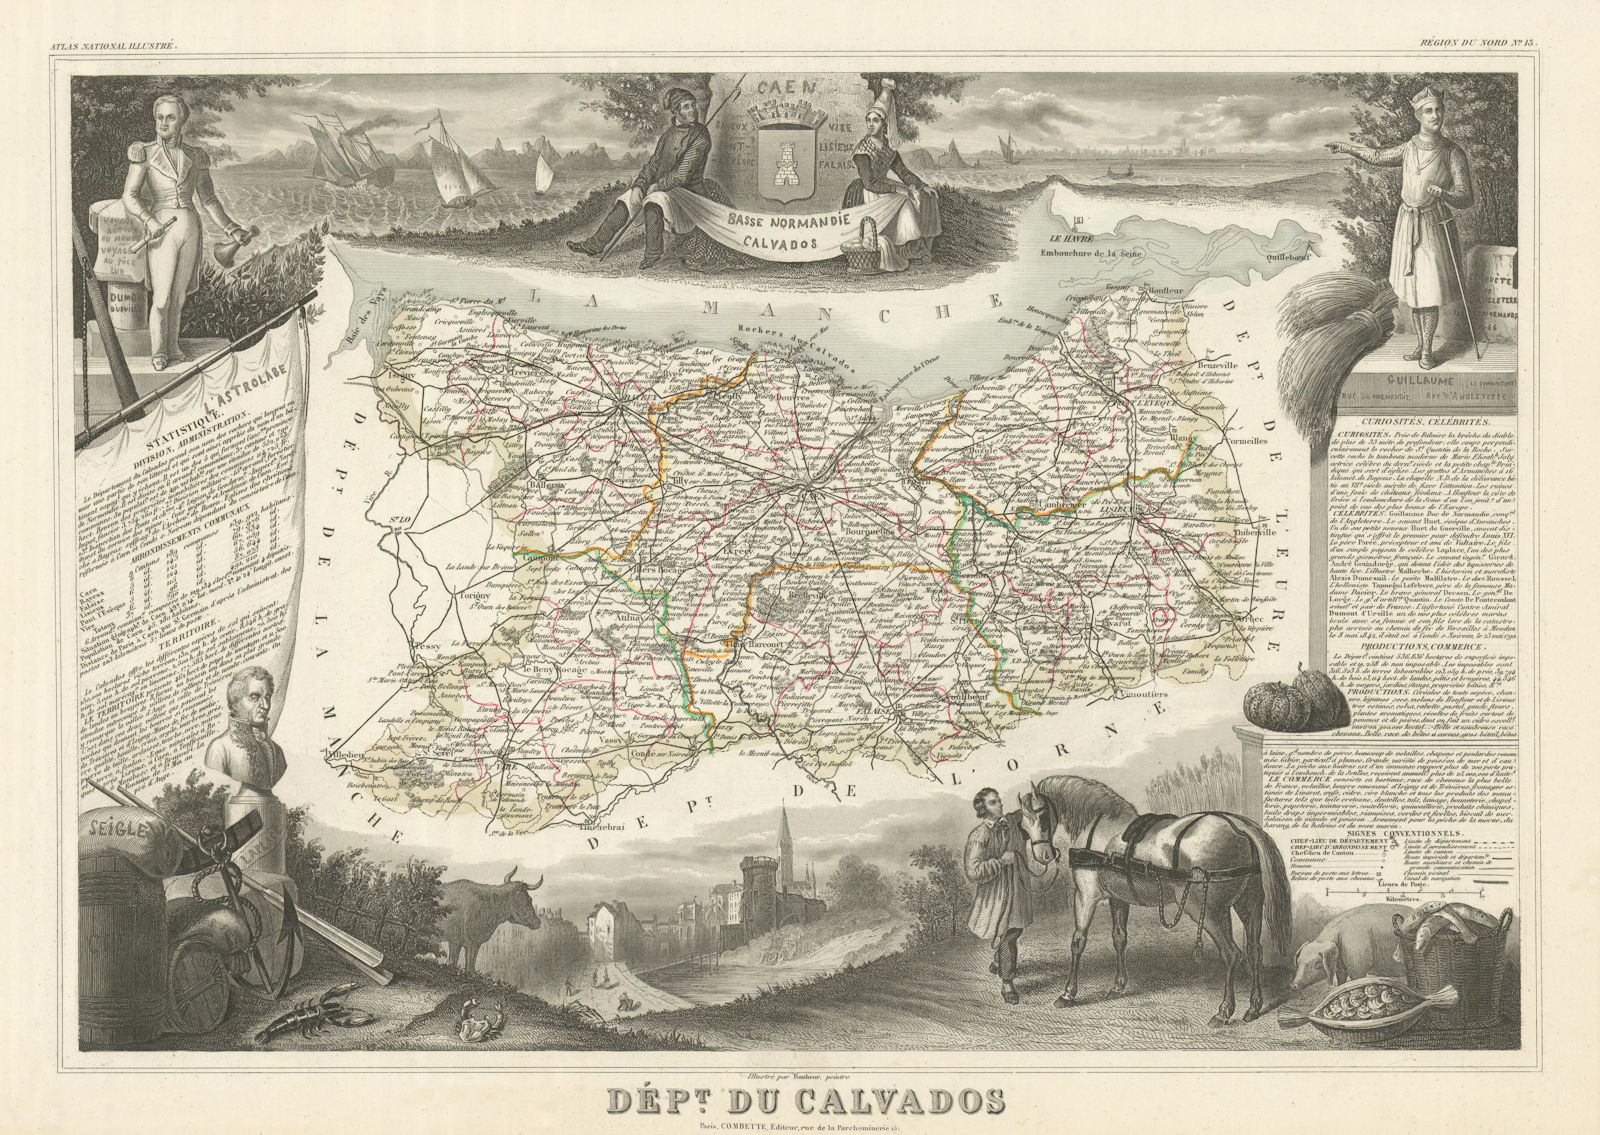 Département du CALVADOS. Decorative antique map/carte by Victor LEVASSEUR 1856